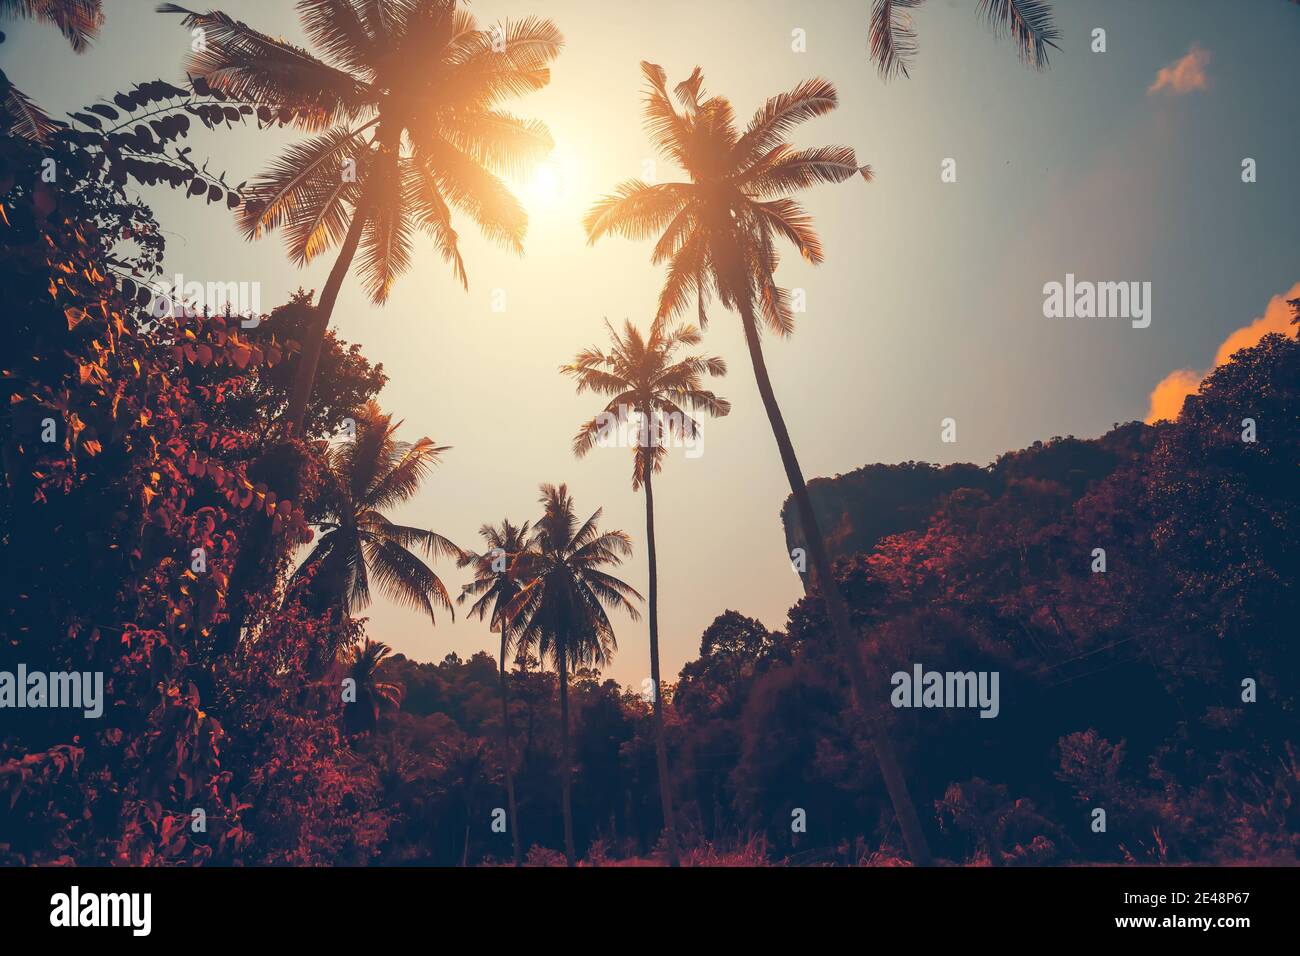 Otoño Tailandia selva resort: sol brilla sobre los árboles en el bosque tropical. Majestuoso paisaje de naturaleza exótica de Asia de bosque pluvial deciduo. Increíble paisaje tailandés en suaves tonos cálidos de otoño en el día soleado Foto de stock